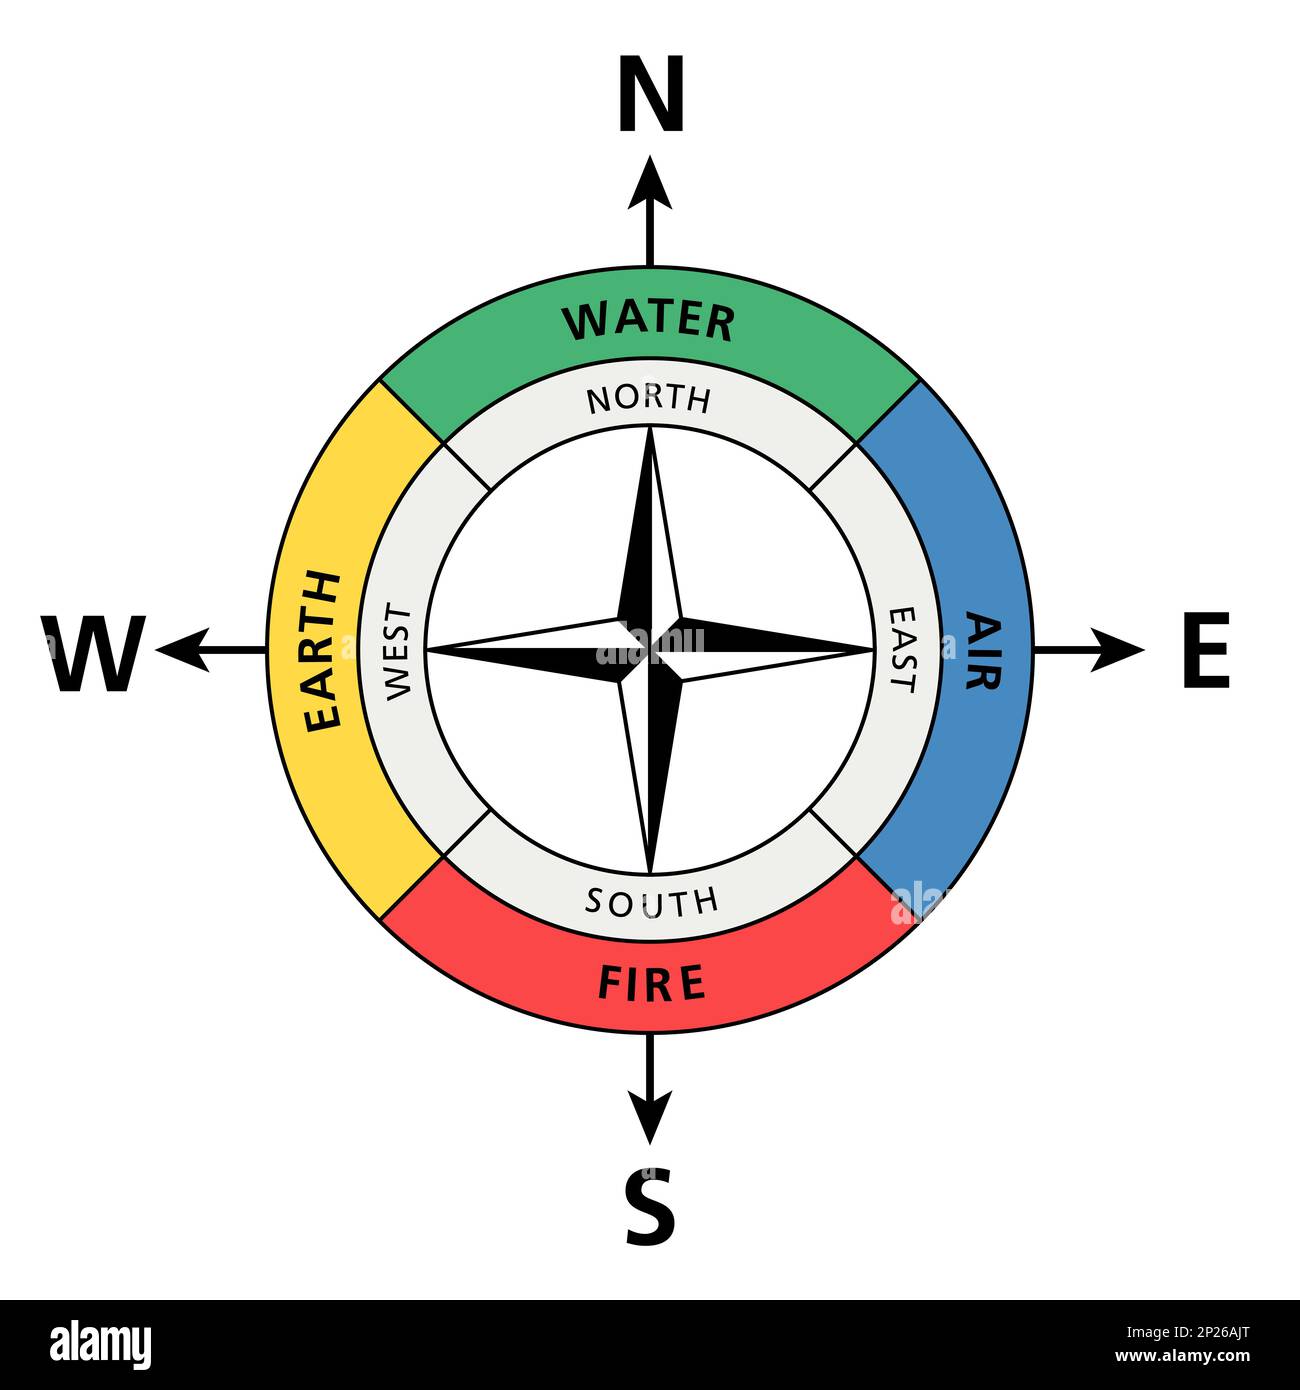 Cardinal directions analogue aux quatre éléments classiques. Les positions traditionnelles de l'eau, de l'air, du feu et de la terre, et les directions cardinales. Banque D'Images